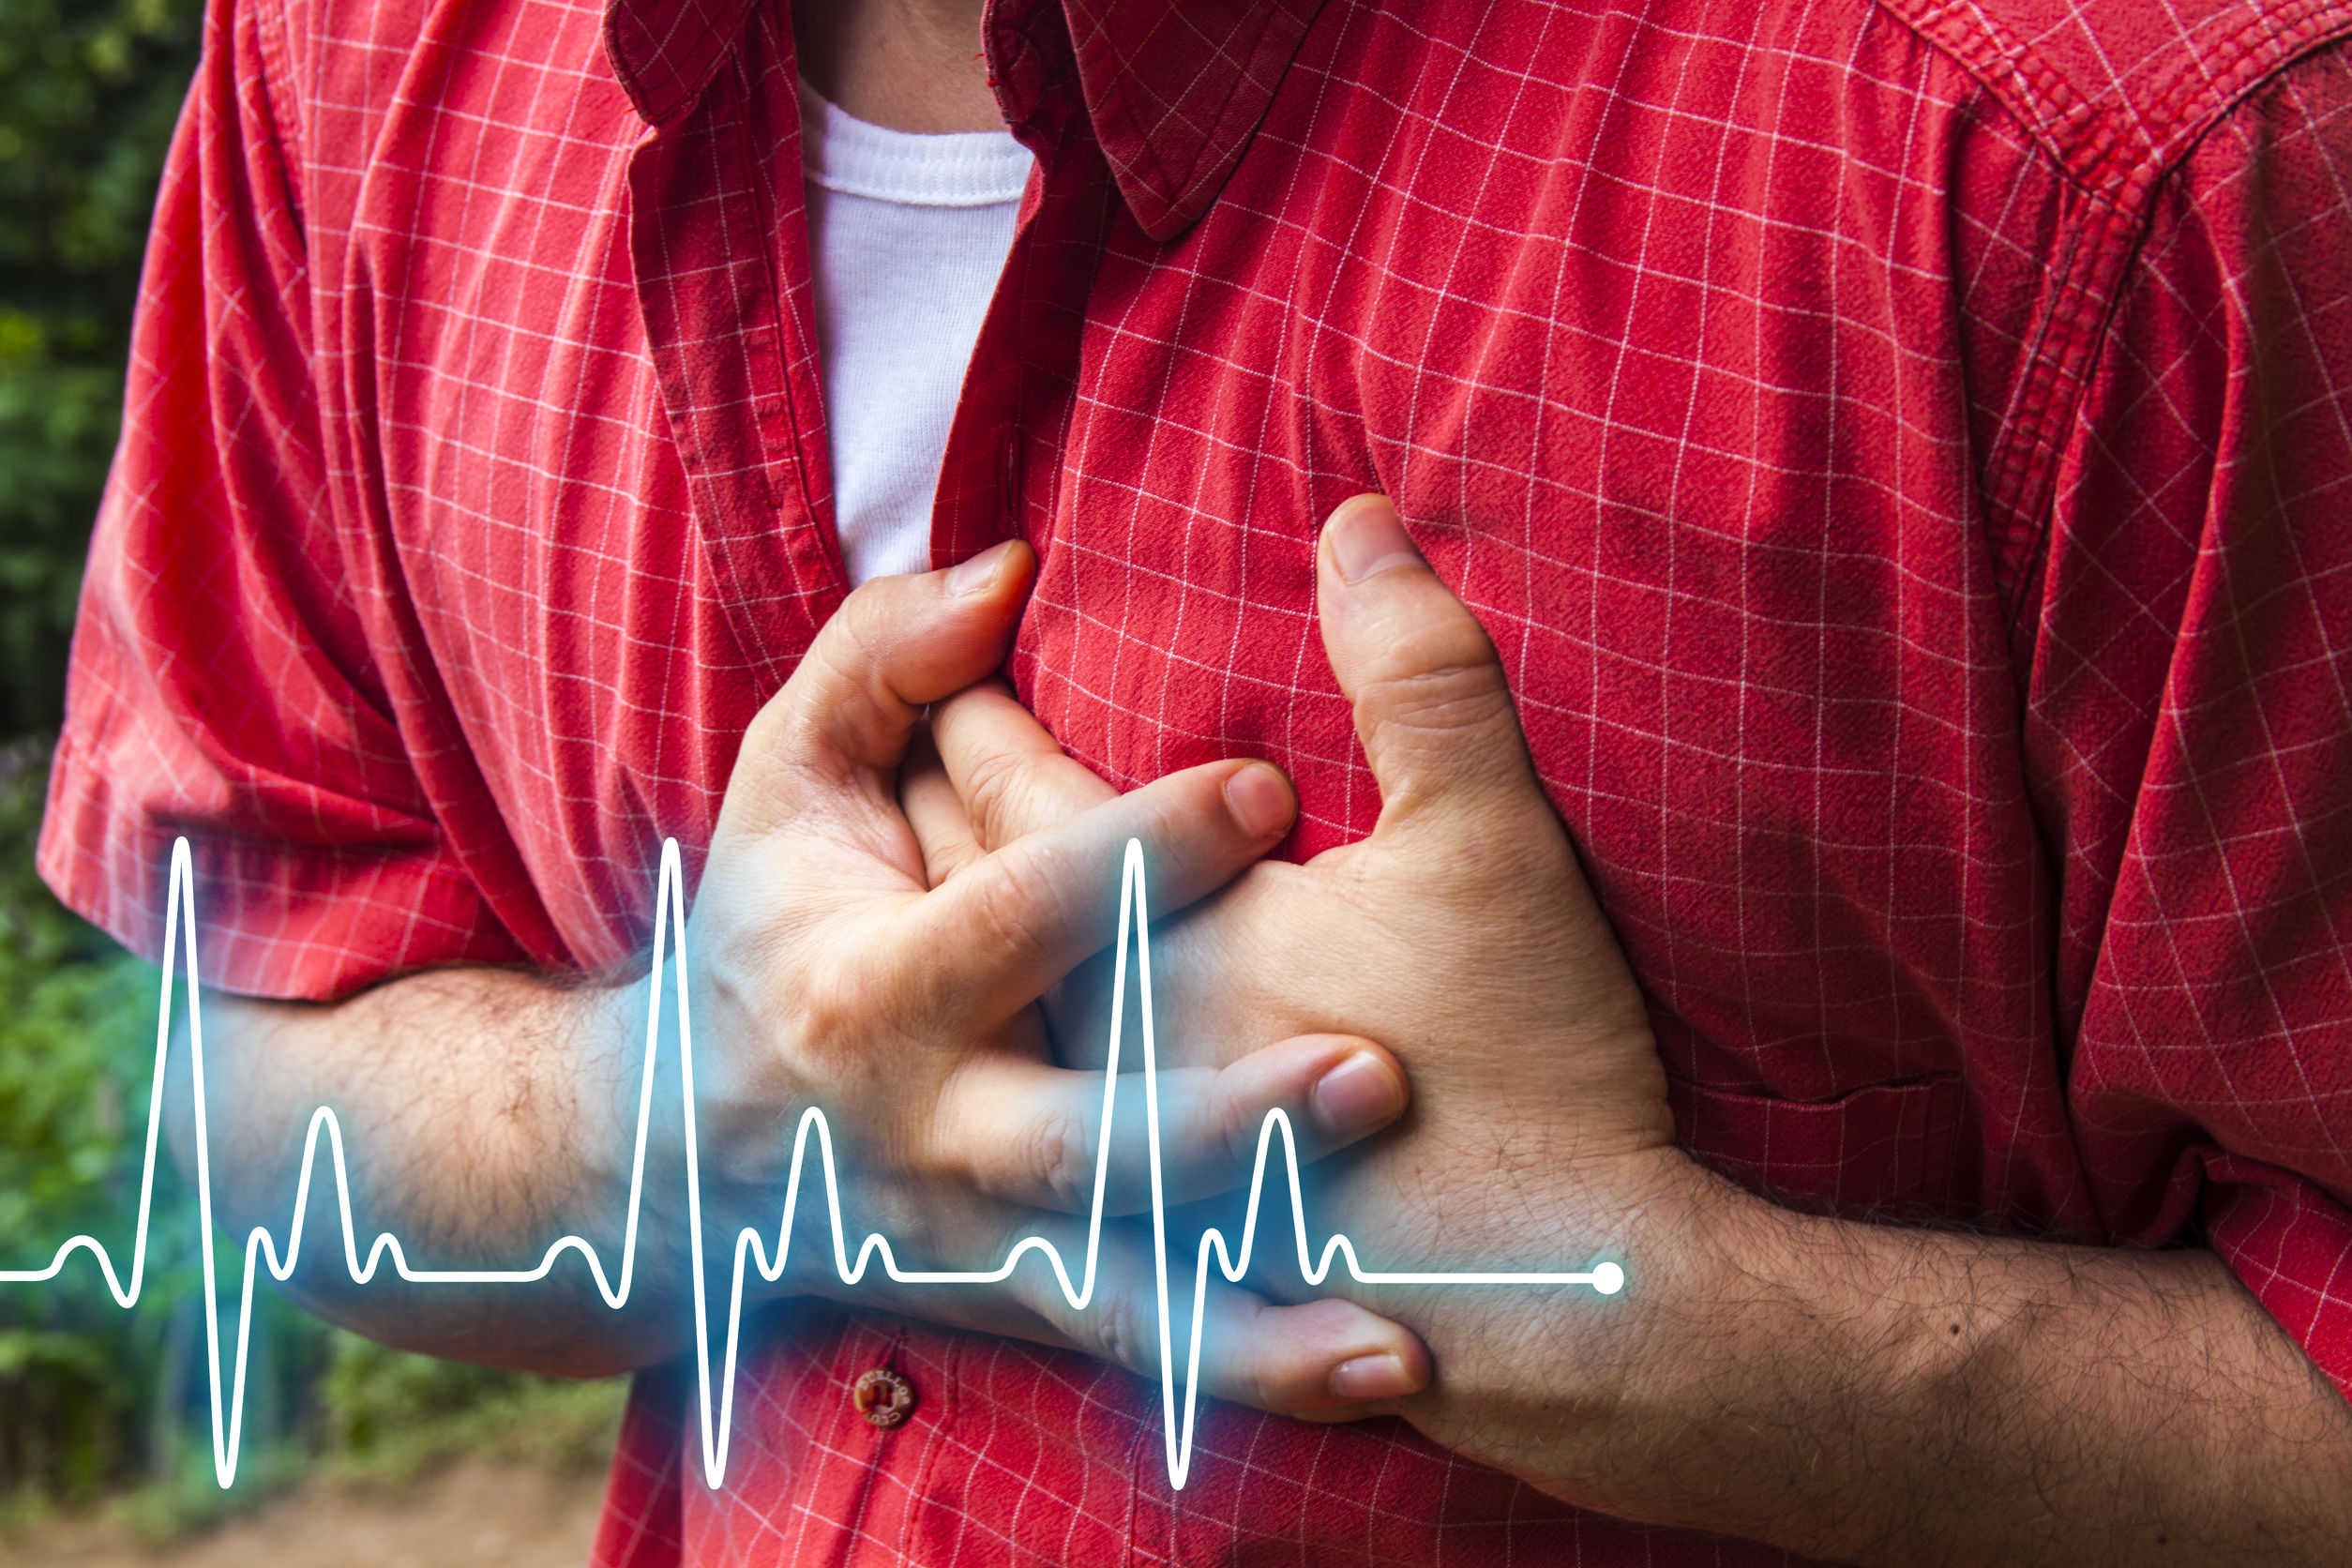 Le bruit excessif peut entraîner des problèmes cardiovasculaires